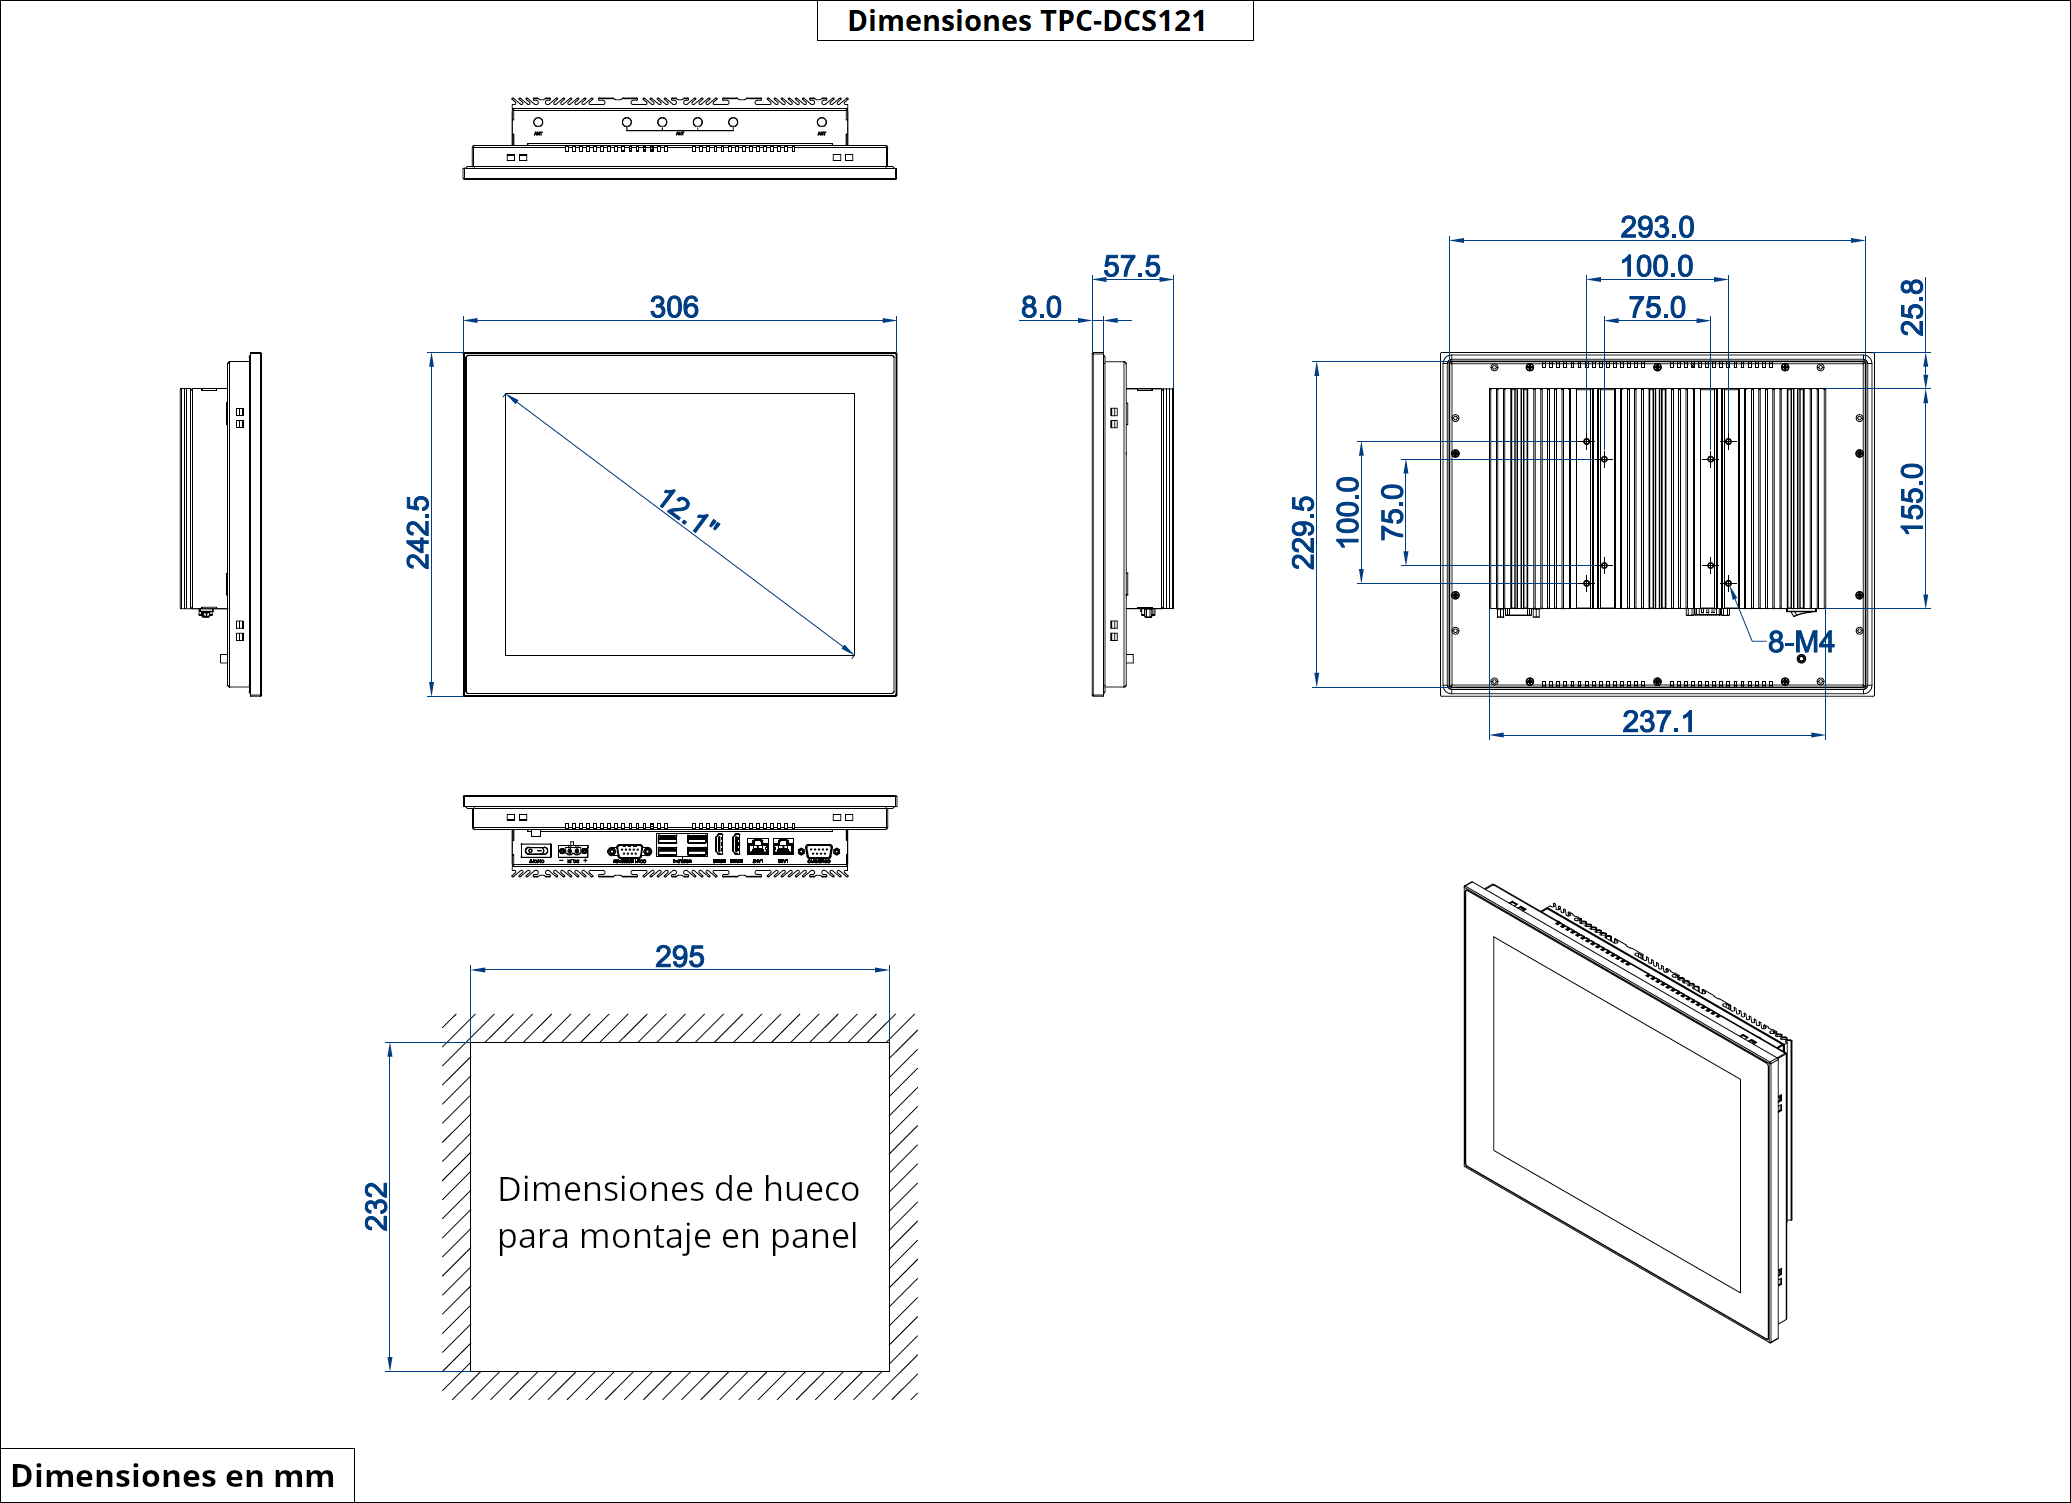 Dimensiones del producto TPC-DCS121